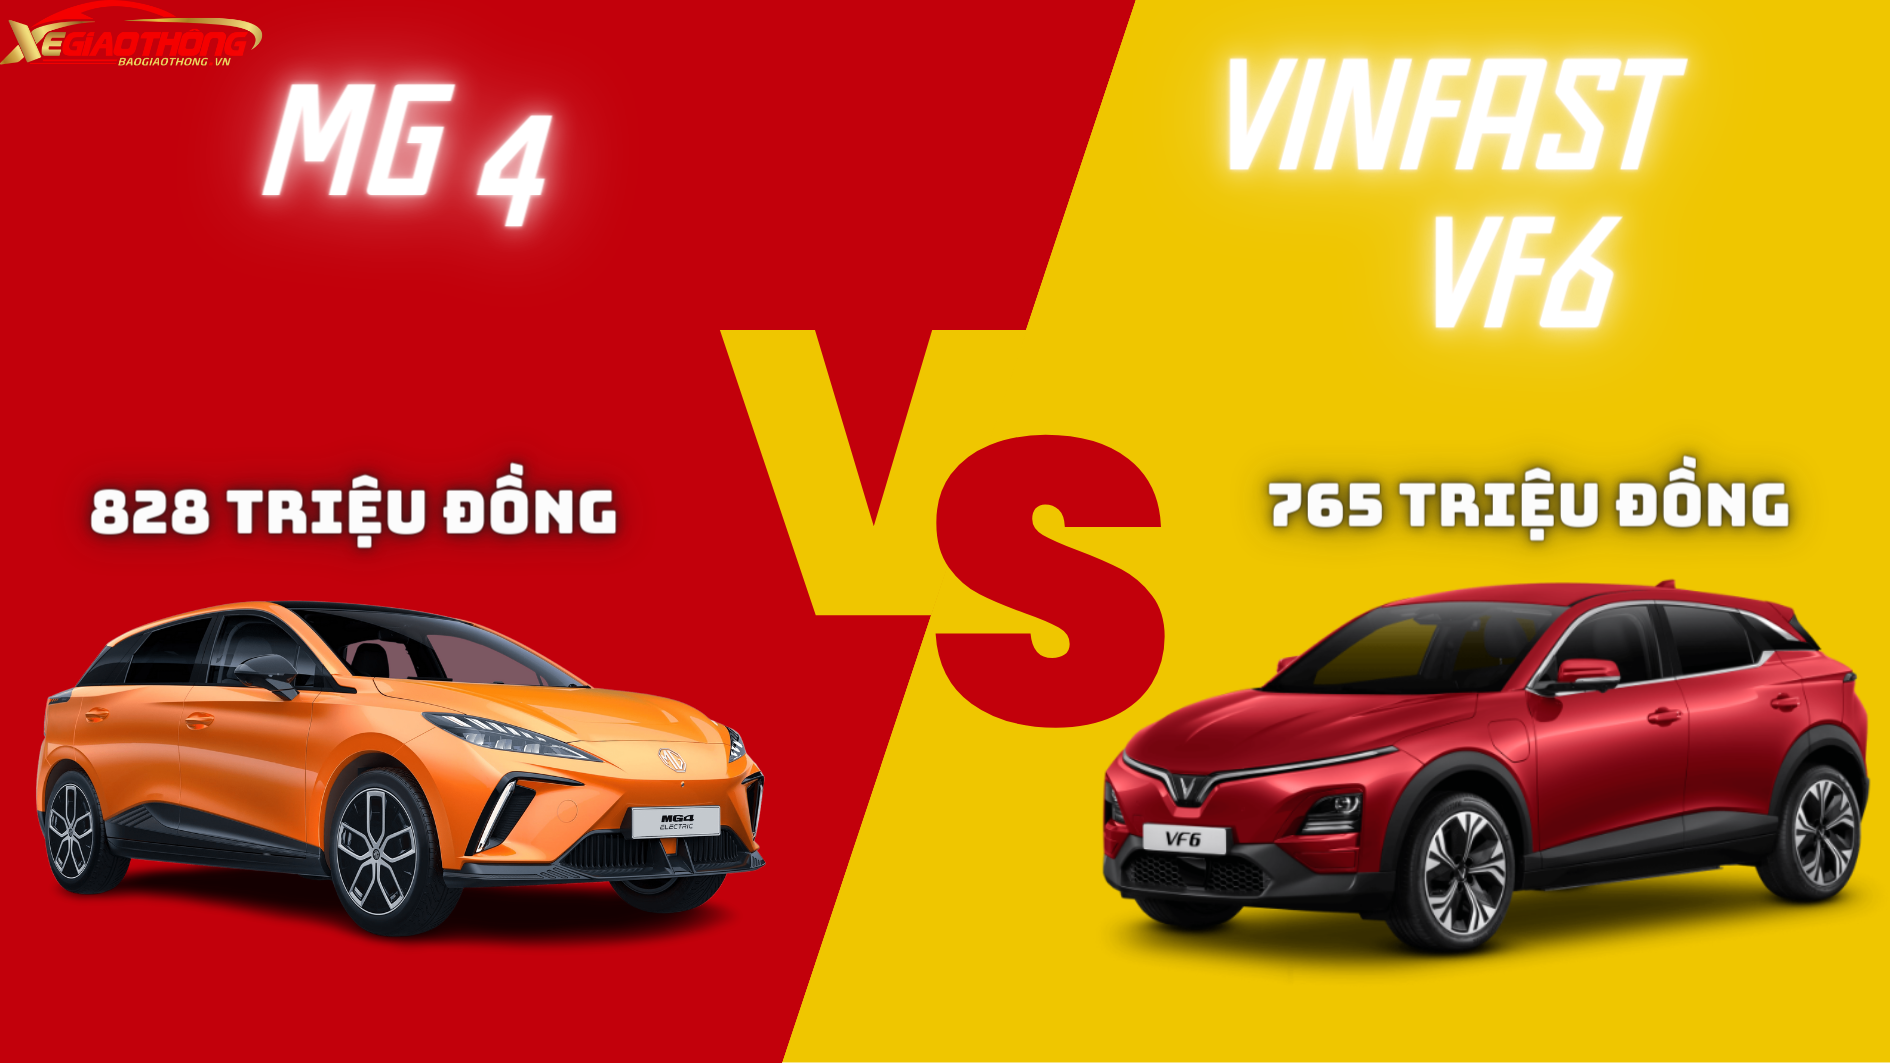 MG4 vừa ra mắt có đủ sức cạnh tranh với VinFast VF 6?- Ảnh 1.